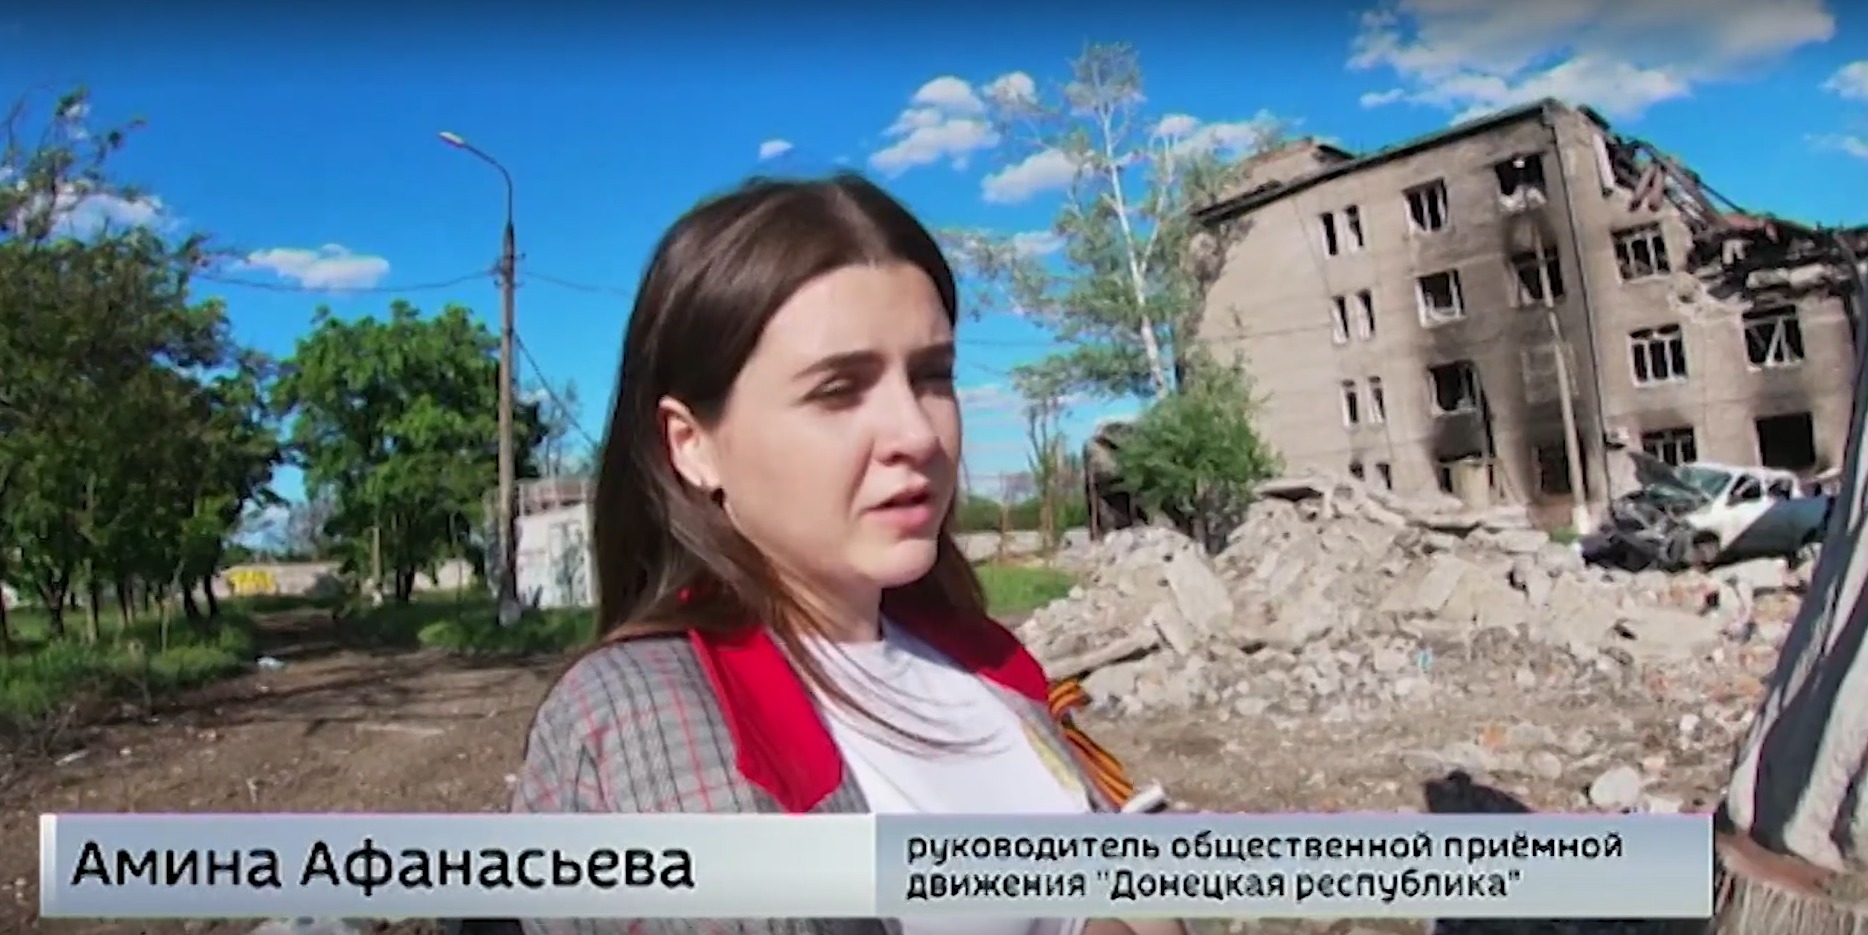 Дівчину, яка допомагає окупантам в Маріуполі, відрахували за це з українського вишу 1